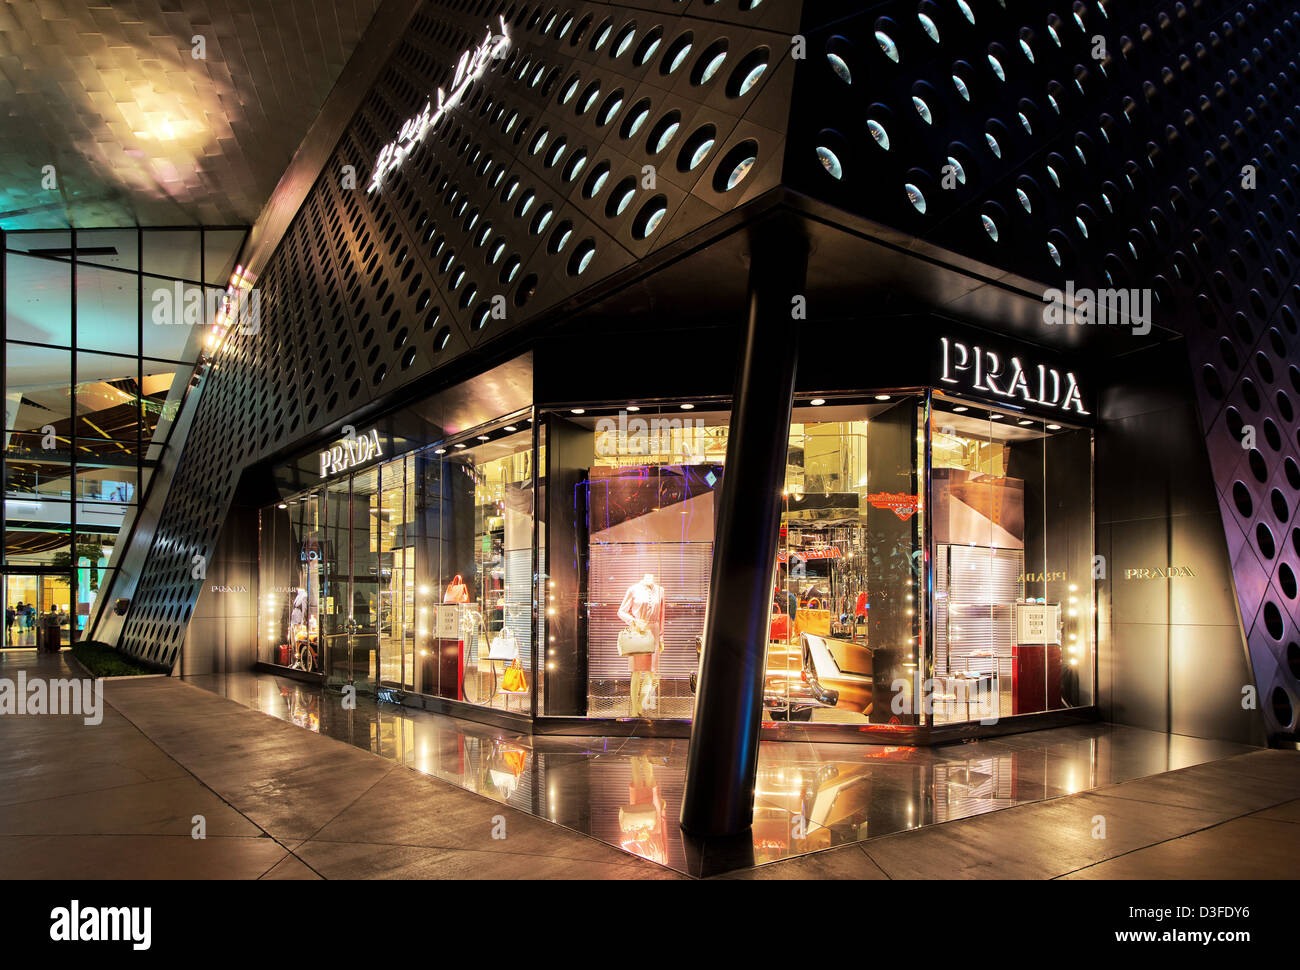 Prada-Geschäft Crystals at CityCenter Einkaufszentrum Geschäfte, Las Vegas,  Nevada, USA Stockfotografie - Alamy